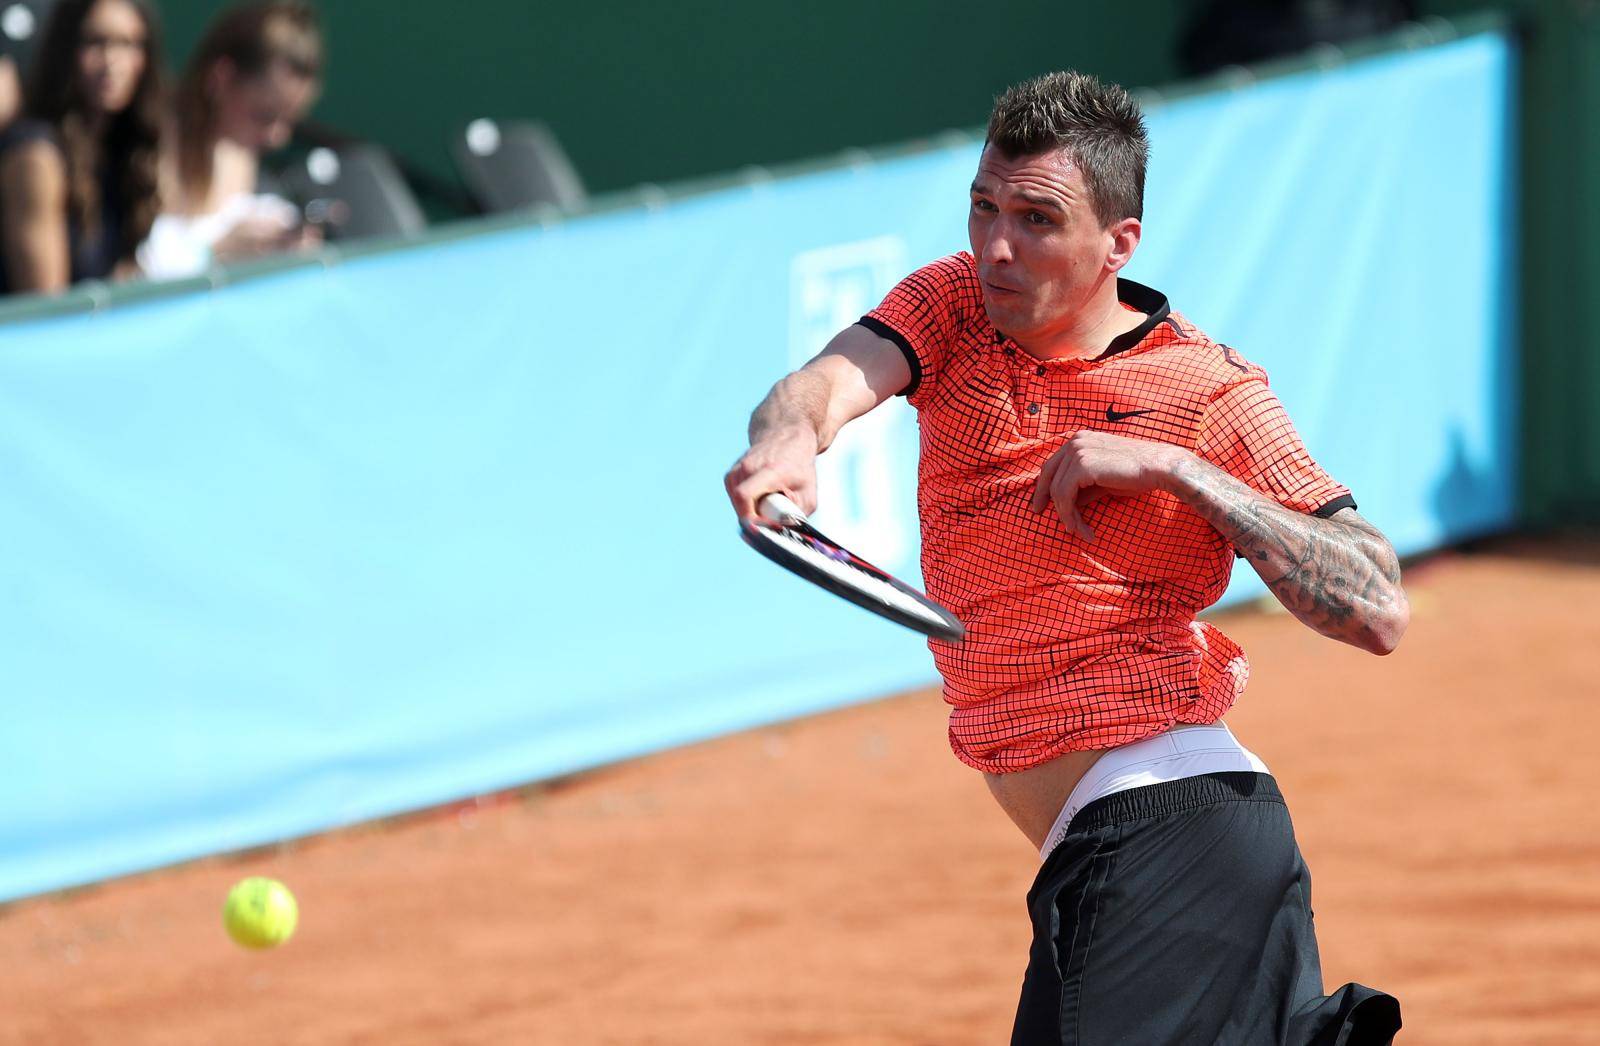 Mario MandÅ¾ukiÄ zaigrao tenis u sklopu  humanitarnog dogaÄanja Gem Set Hrvatska